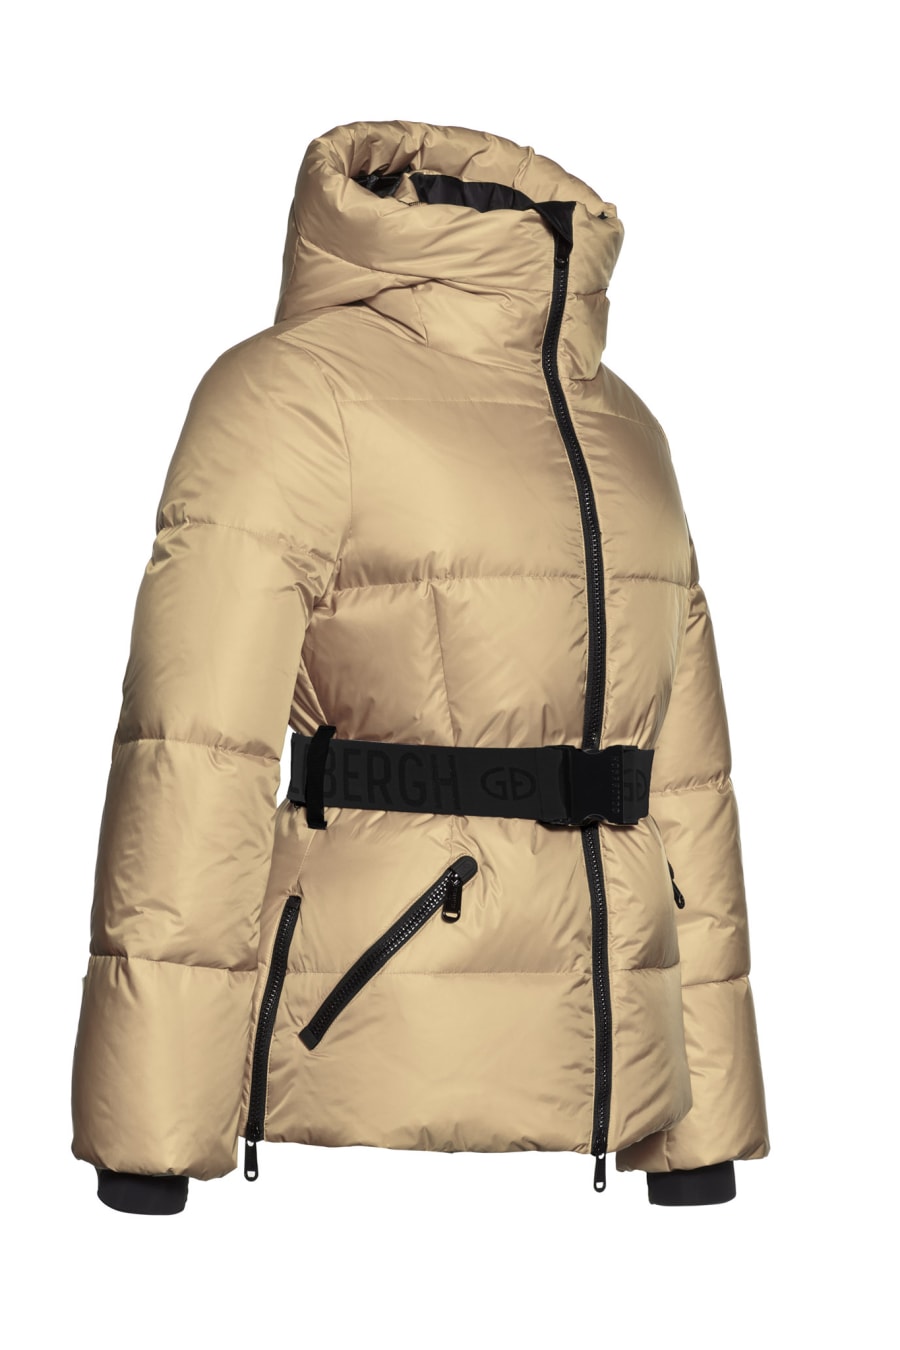 Rent Snowmass Jacket - GOLDBERGH | Selfridges